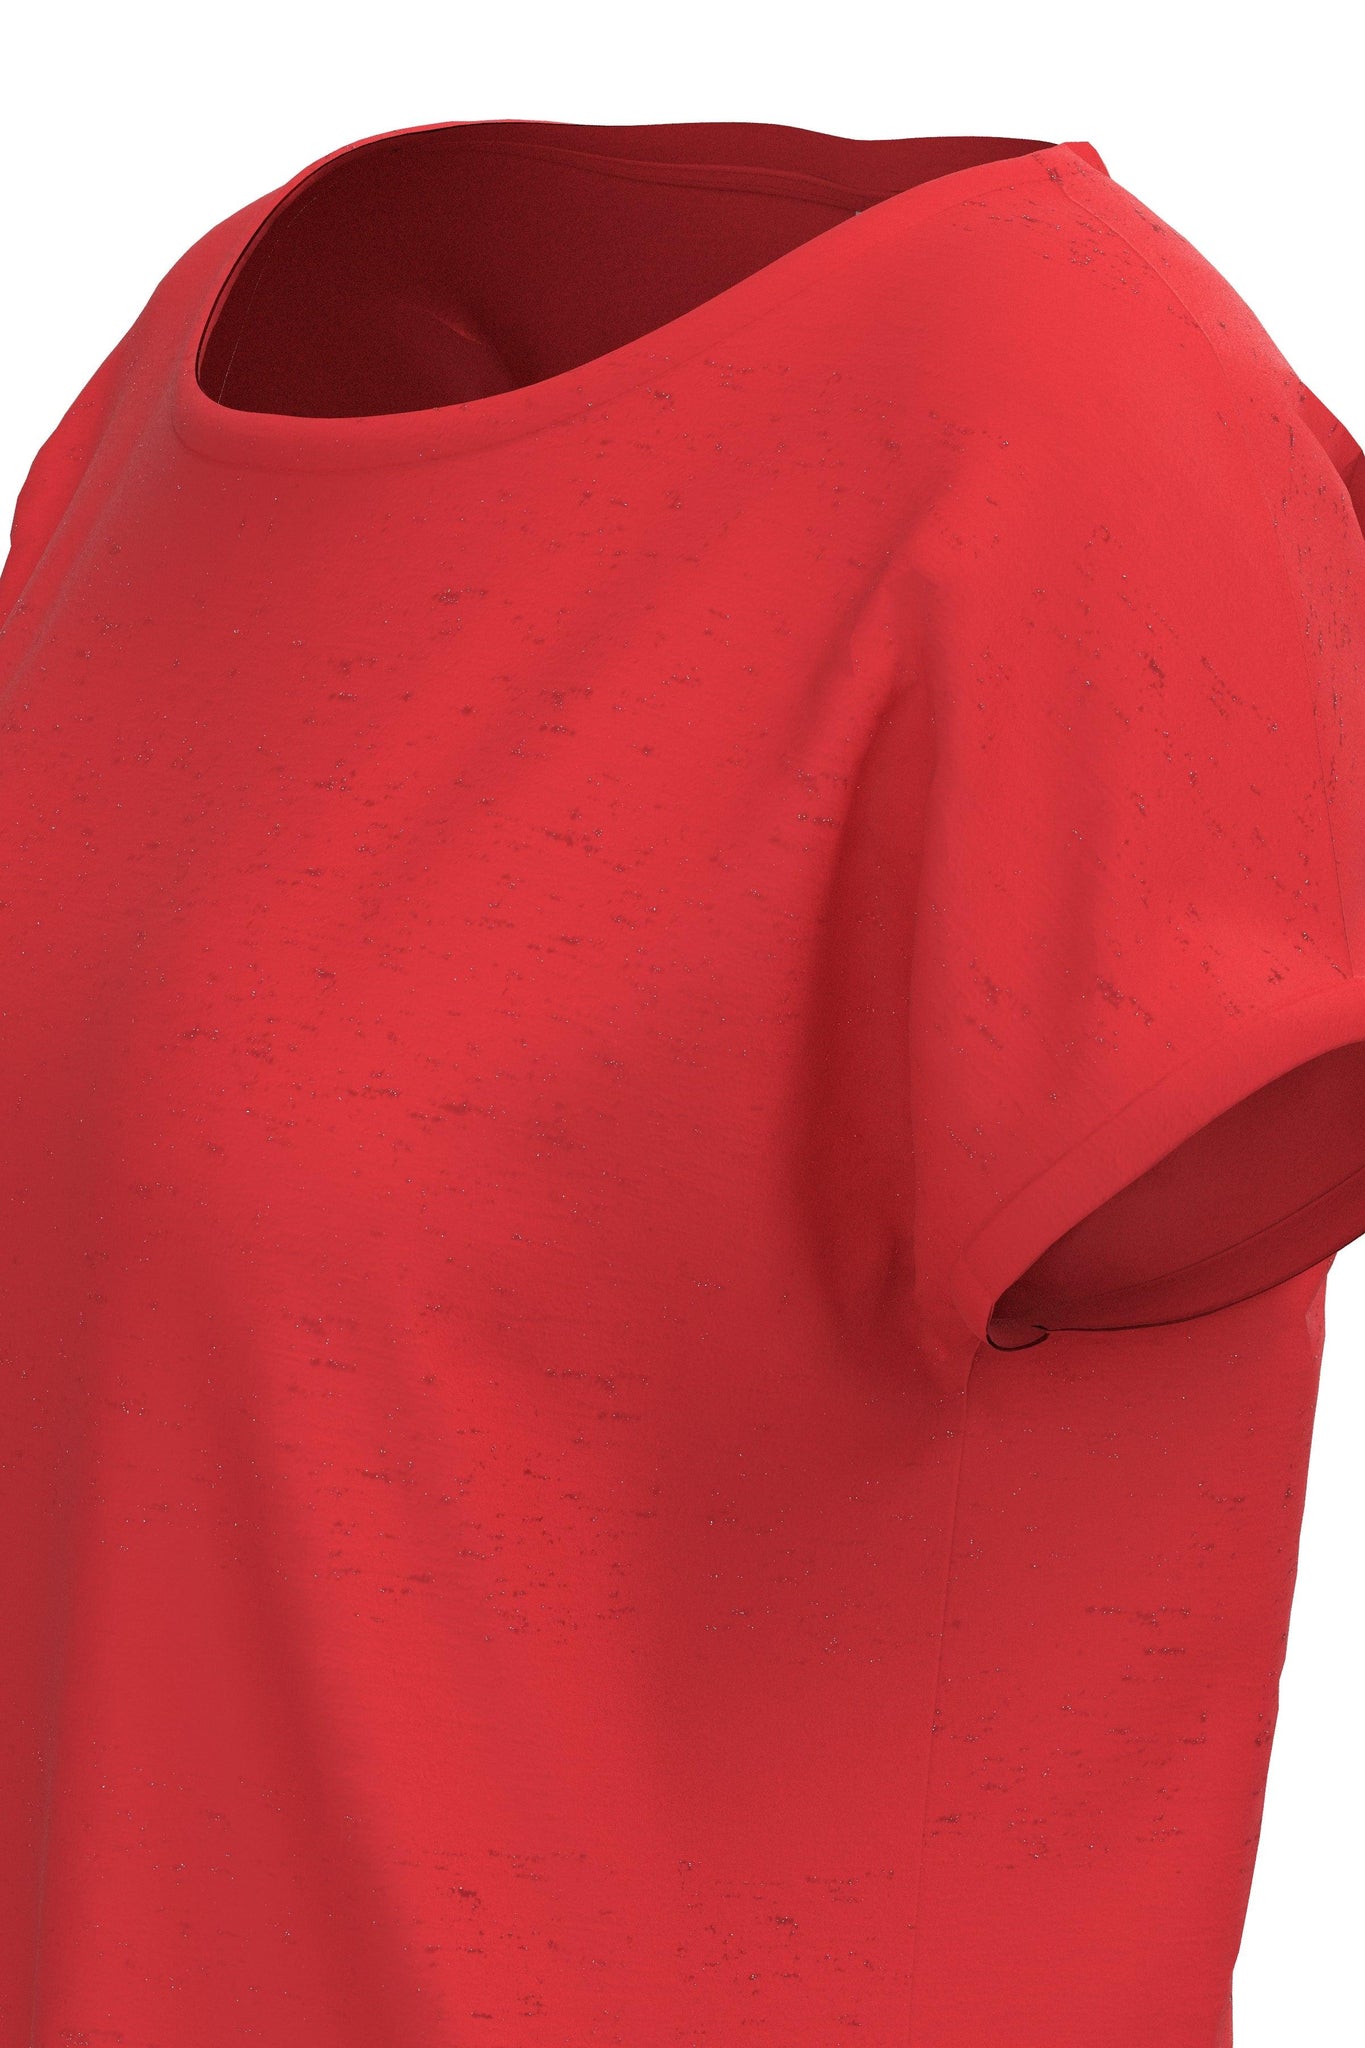 Camiseta ICHI Rebel Poppy Red - ECRU